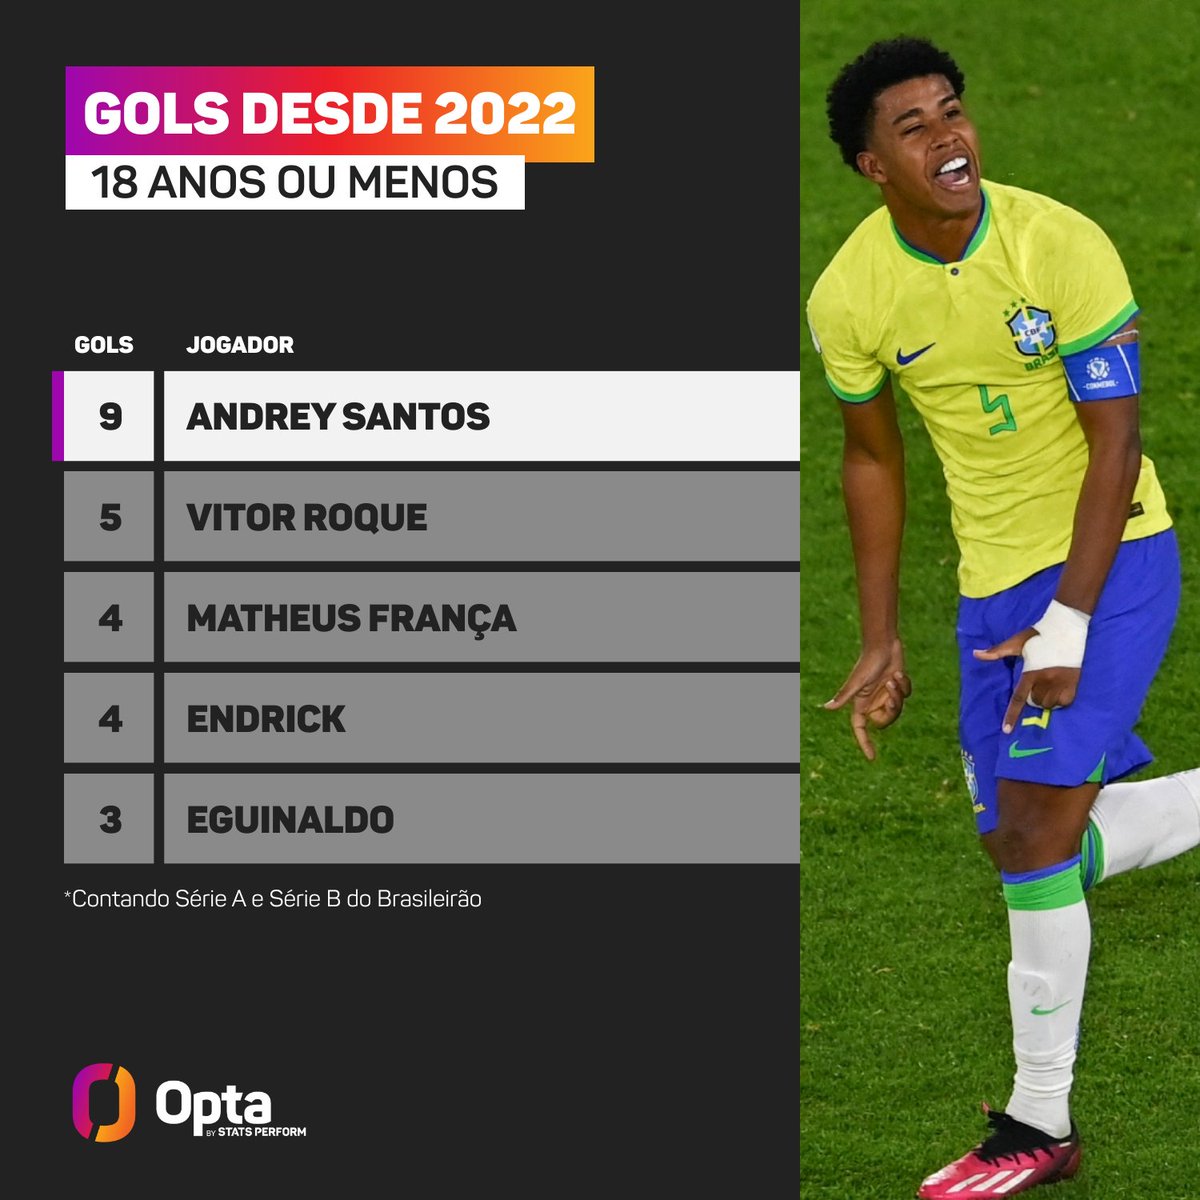 Andrey está entre os 3 jogadores com mais cartões no Brasileiro 2020